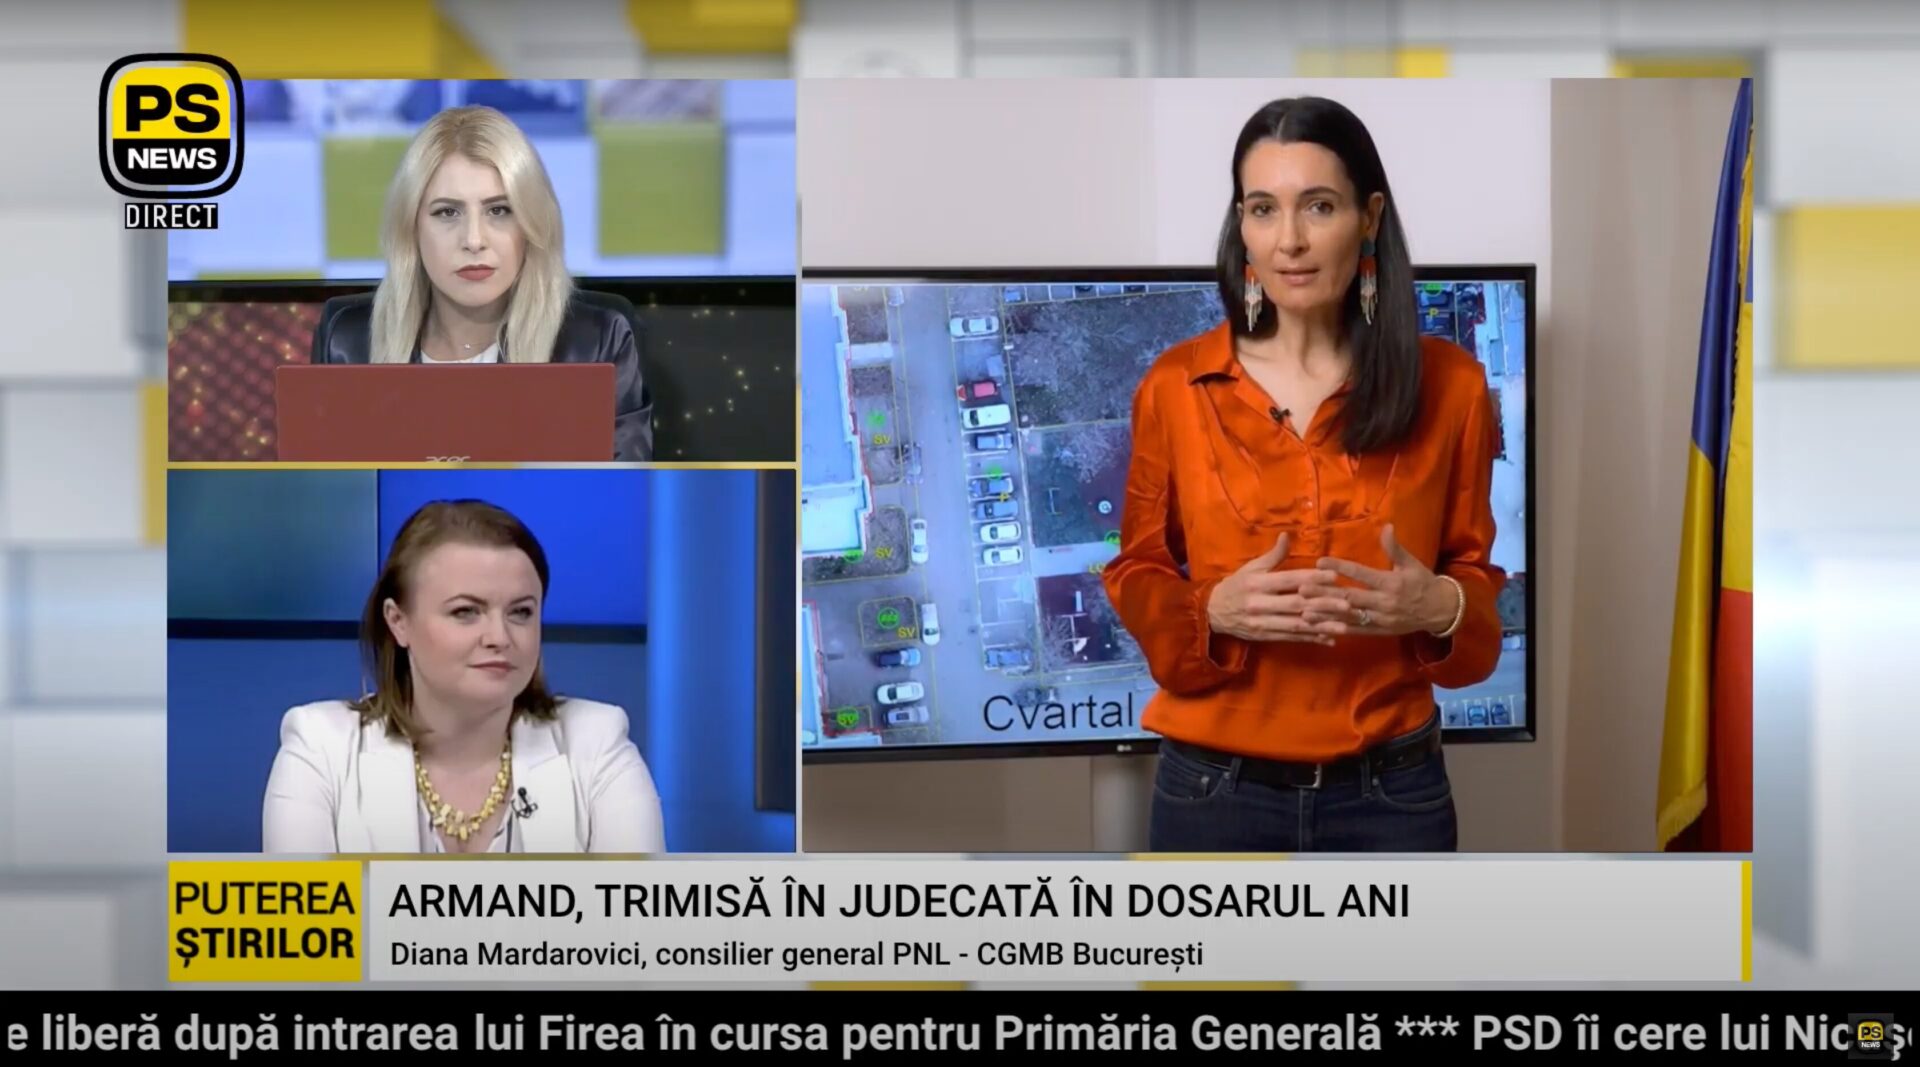 VIDEO Clotilde Armand, primarul penal de la Sectorul 1. Mardarovici, PNL: Noi am atenționat de mai multe ori Prefectura